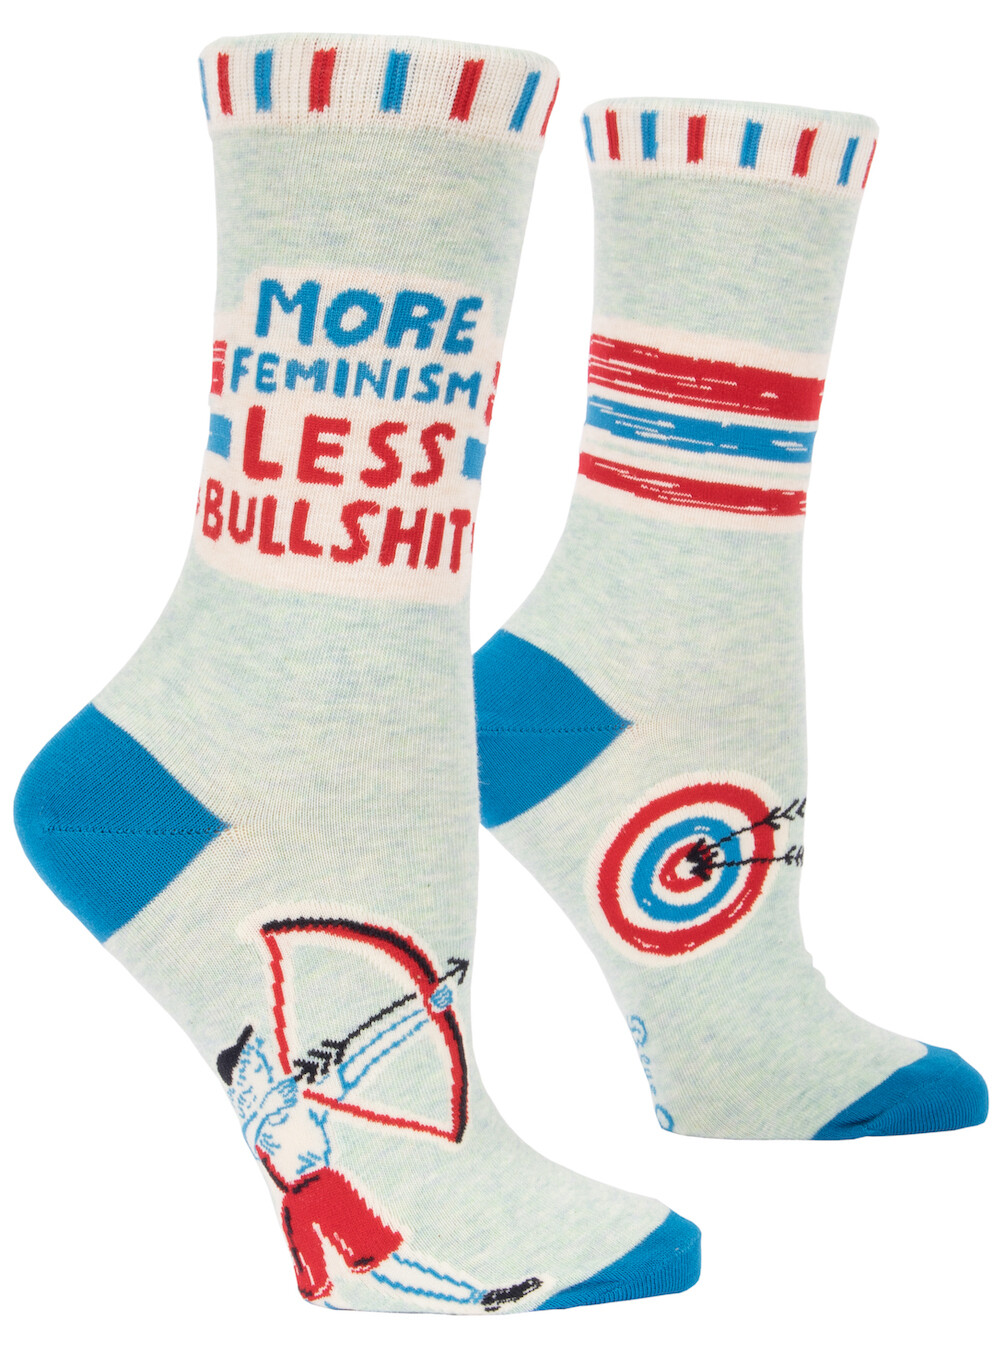 Chaussettes femme More feminism less bullshit